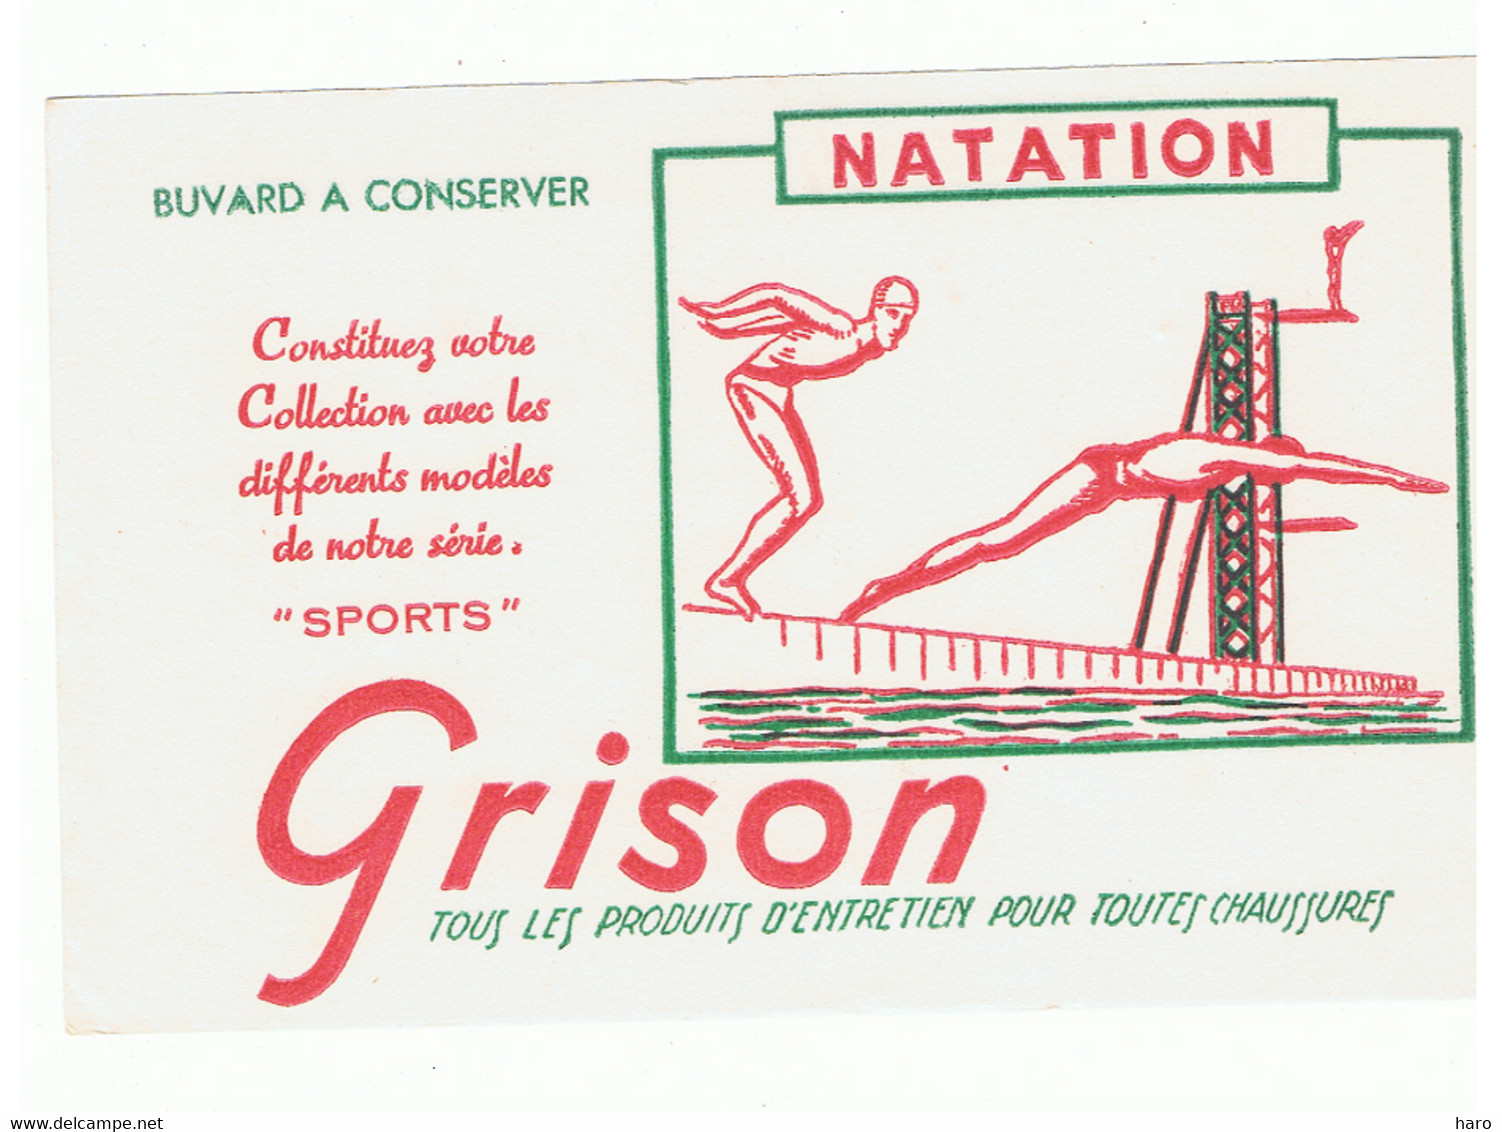 Buvard - NATATION - Sport - Publicité GRISON - Produits Entretien Chaussures (FR102) - Automobile